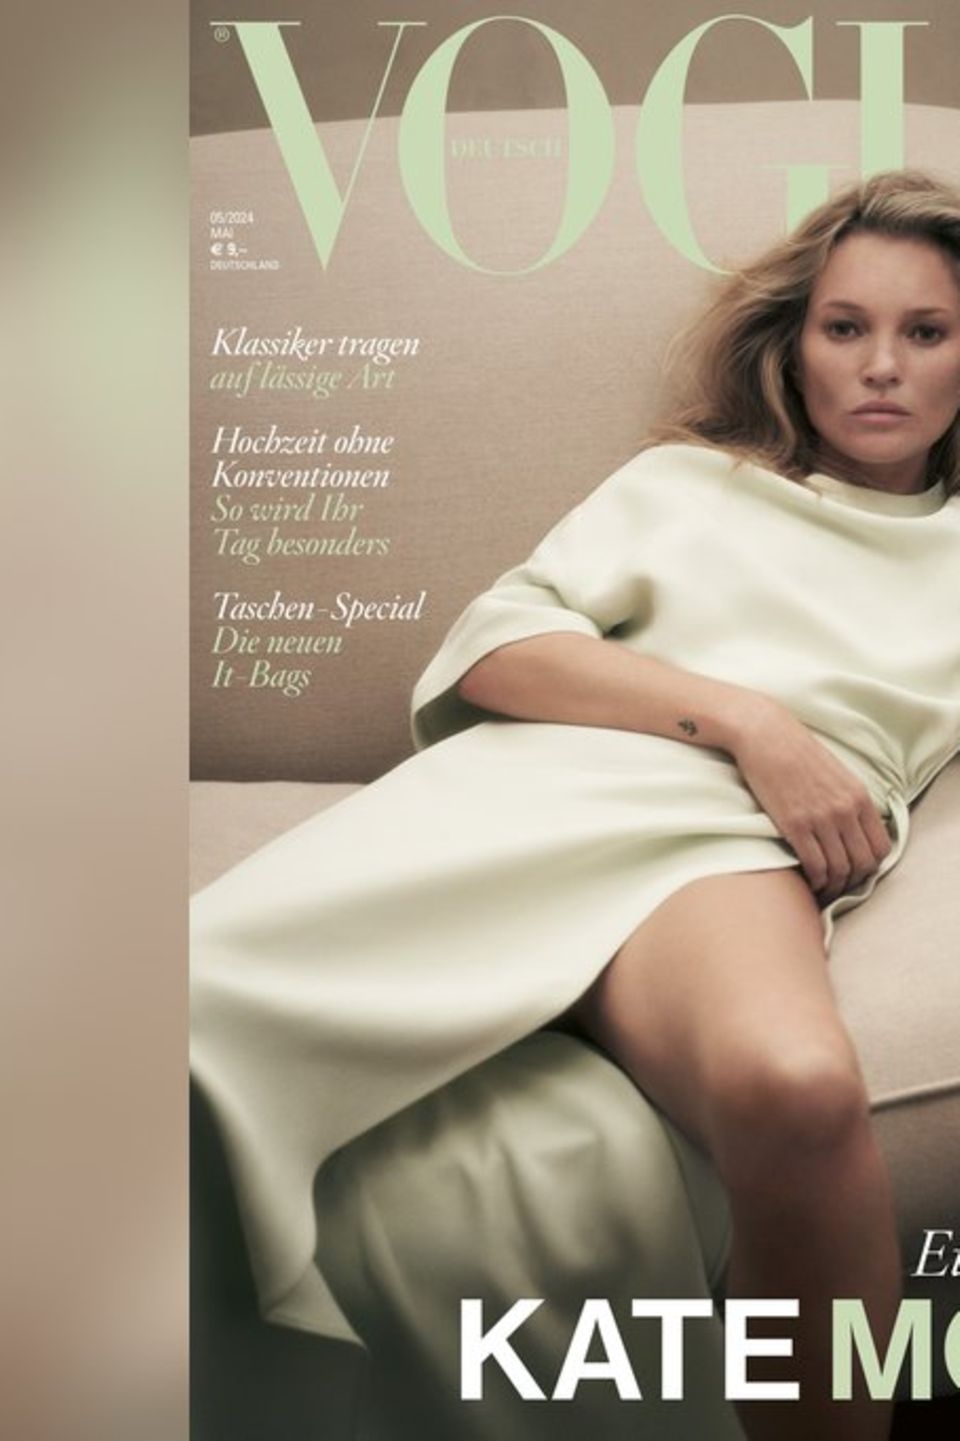 Für das Cover-Shooting und die dazu gehörige "Vogue"-Fotostrecke wurde Kate Moss von ihrem Partner Nikolai von Bismarck abgeli